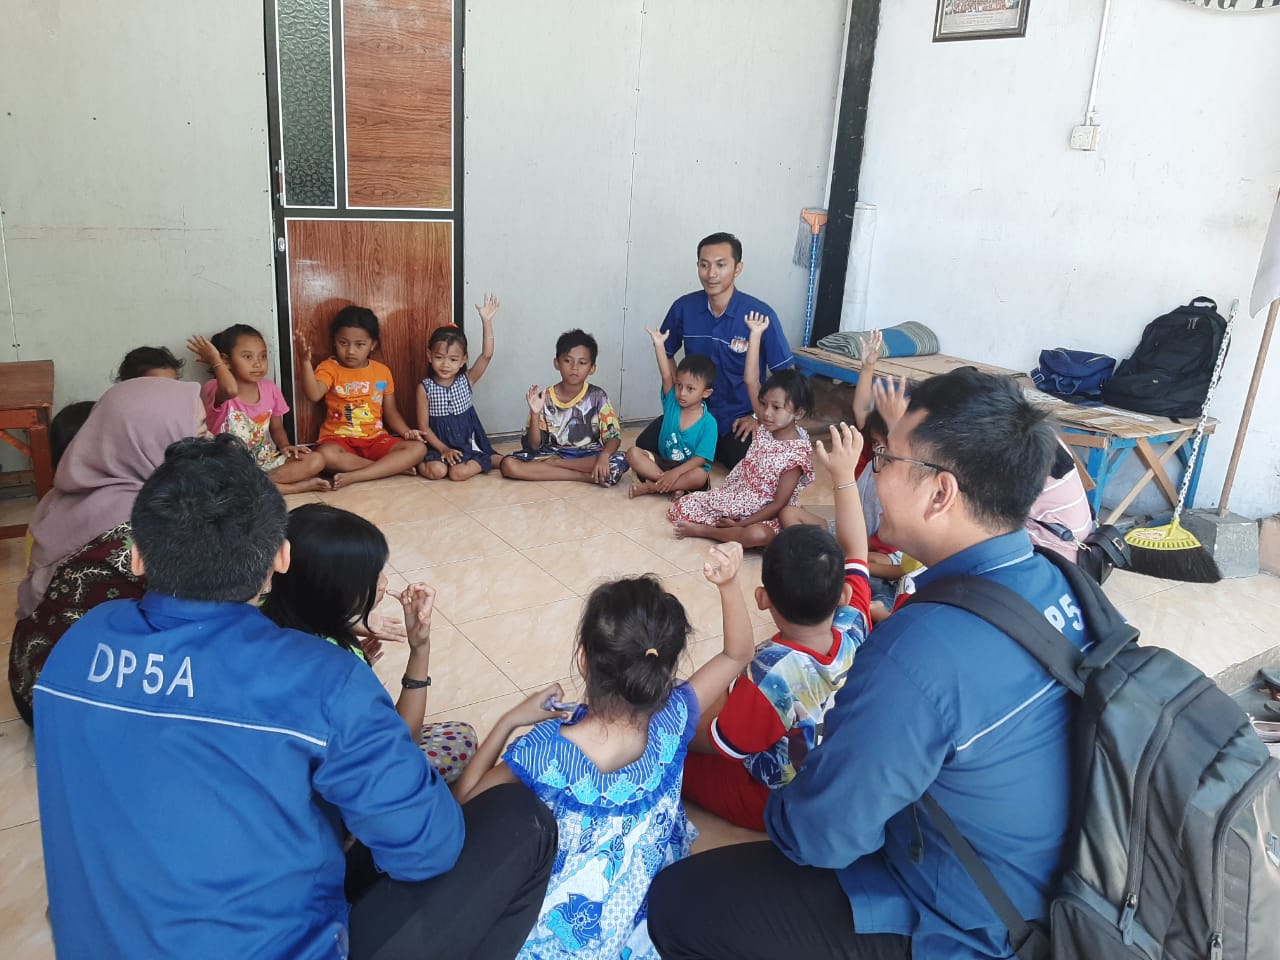 Para psikolog dan konselor dari Tim DP5A mengajak bermain anak-anak di pengungsian sementara. (Foto: dok. Humas Pemkot Surabaya)